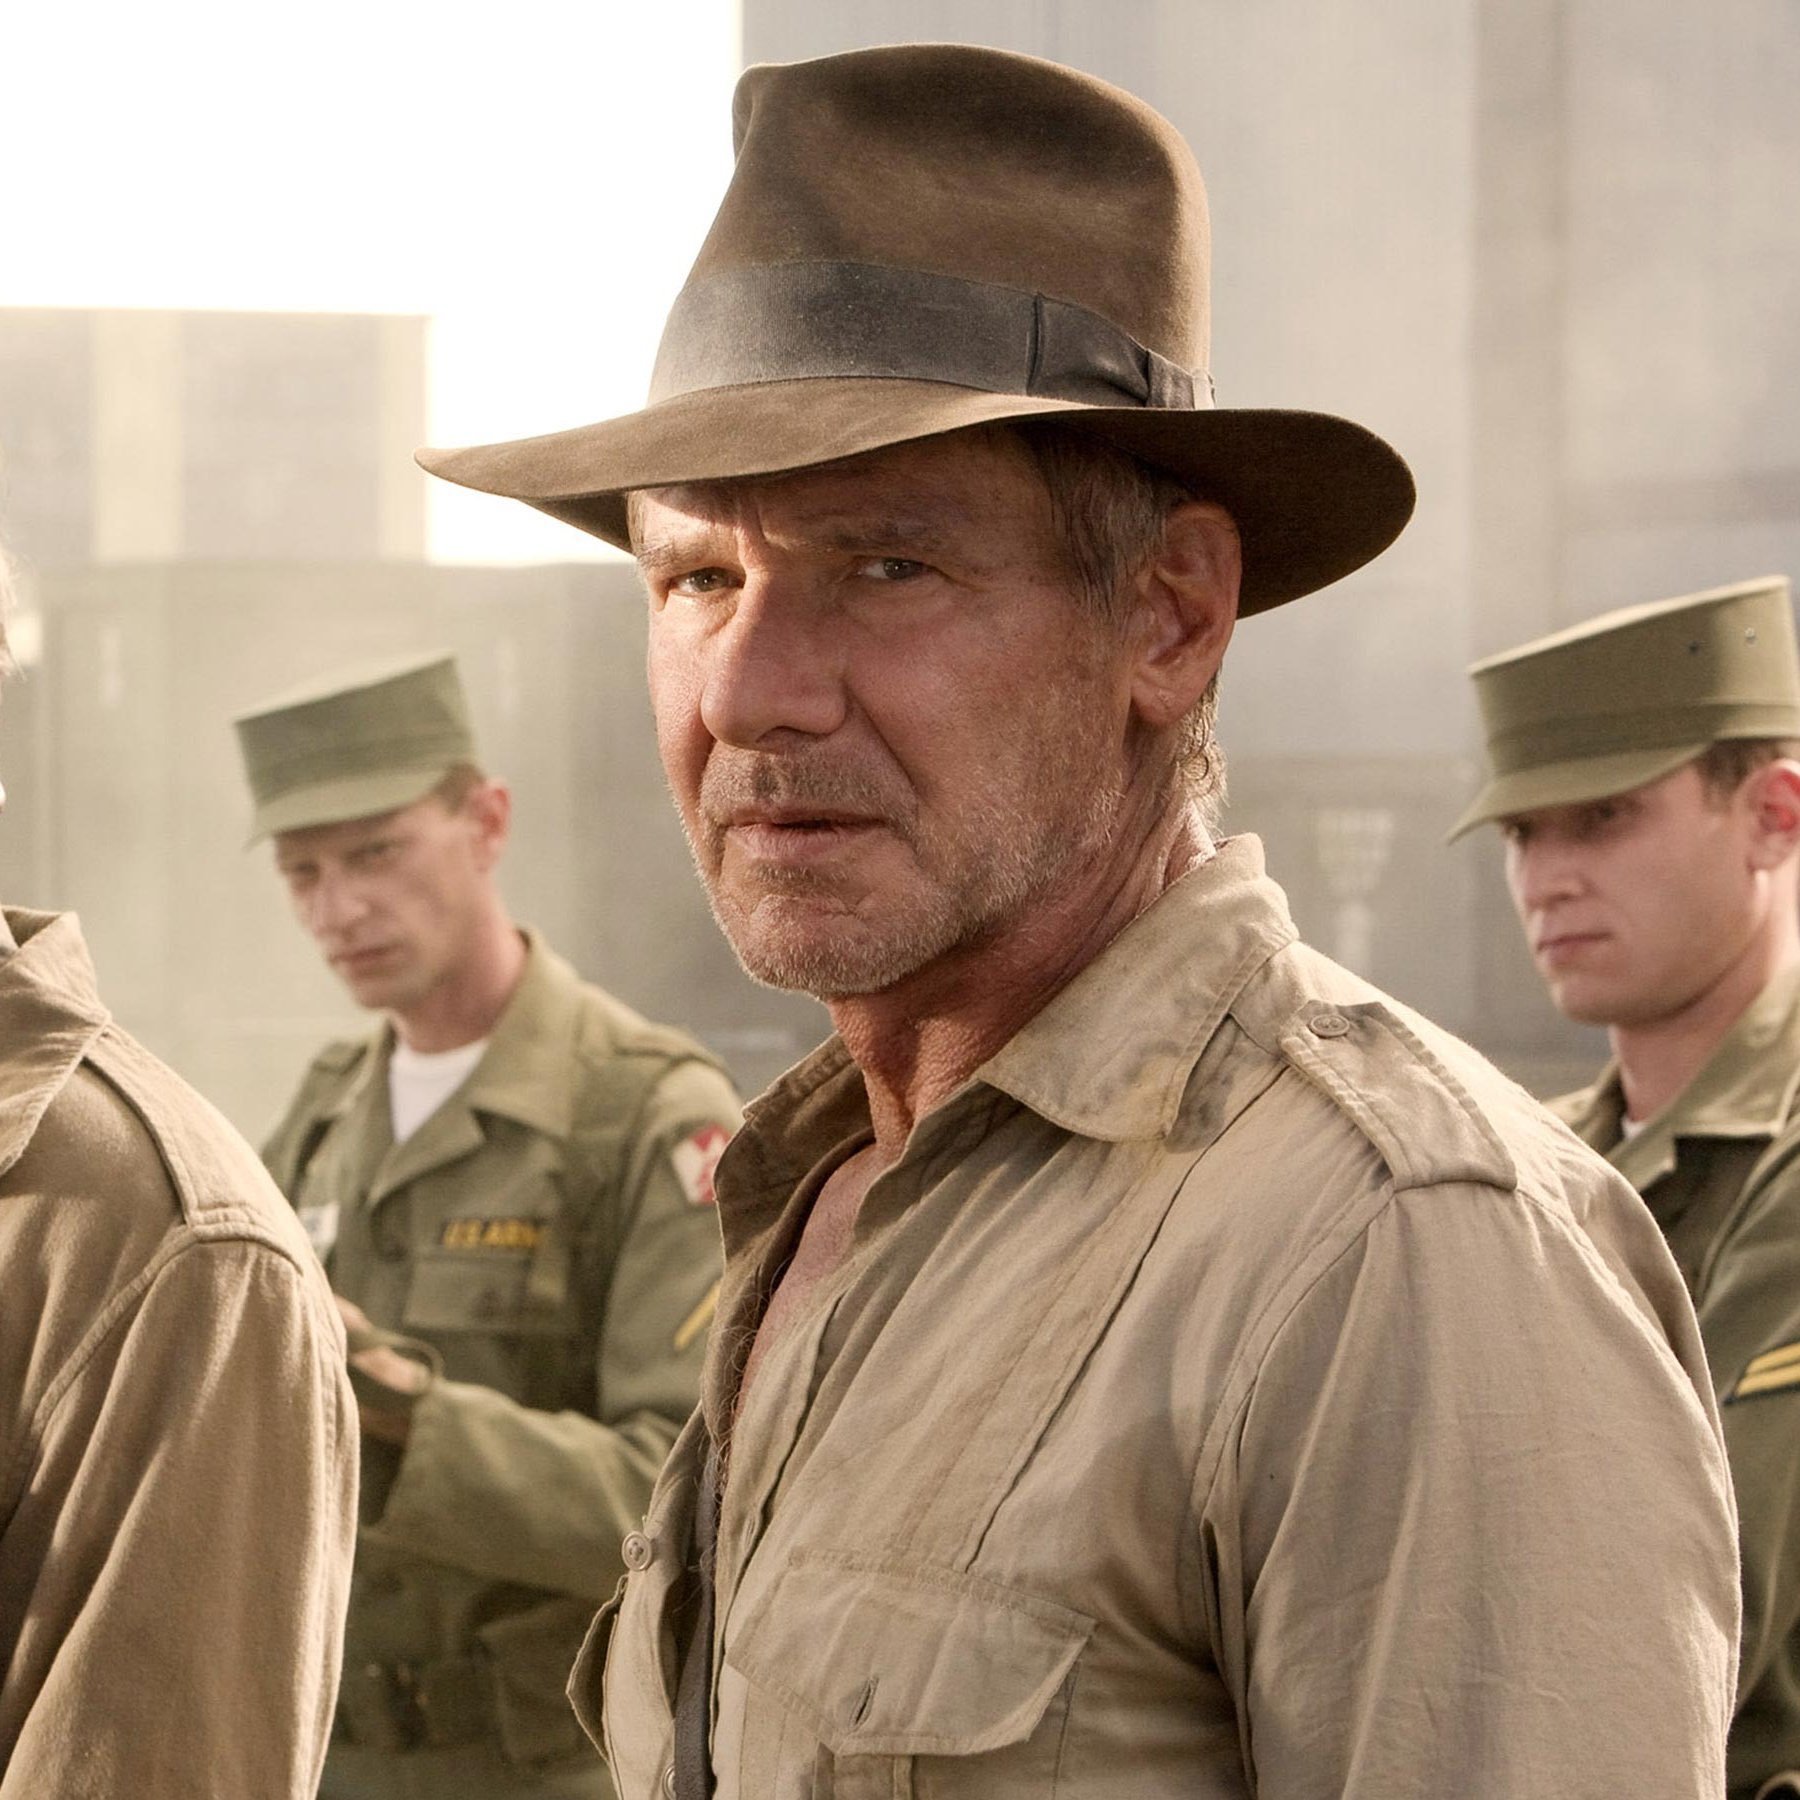 ScreenTimeστο X: ""'Indiana Jones 5' has been delayed to June 30, 2023  https://t.co/4aTHEAnPzV / X